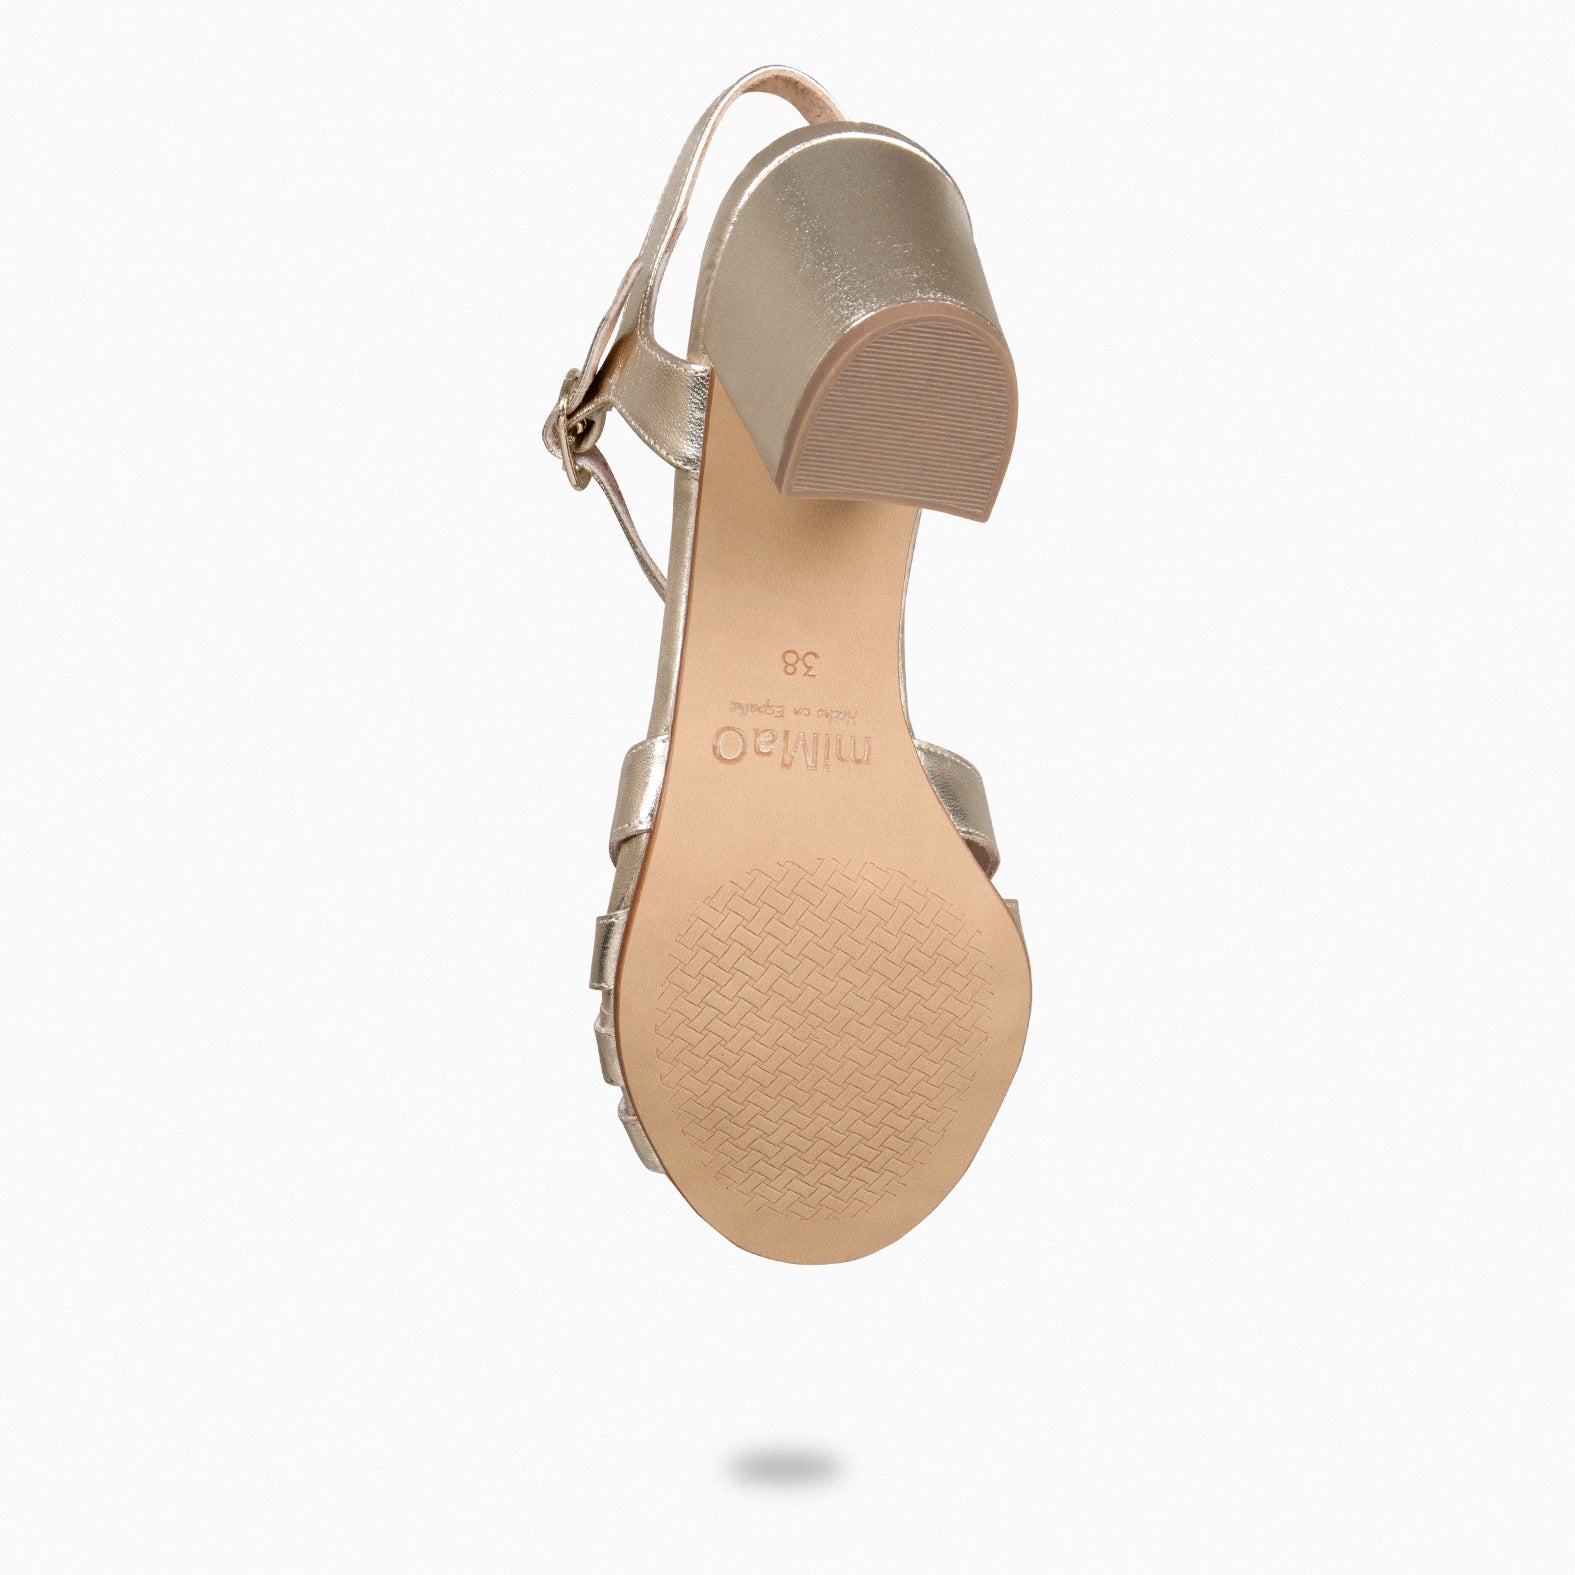 MUSE – GOLDEN block heel sandals